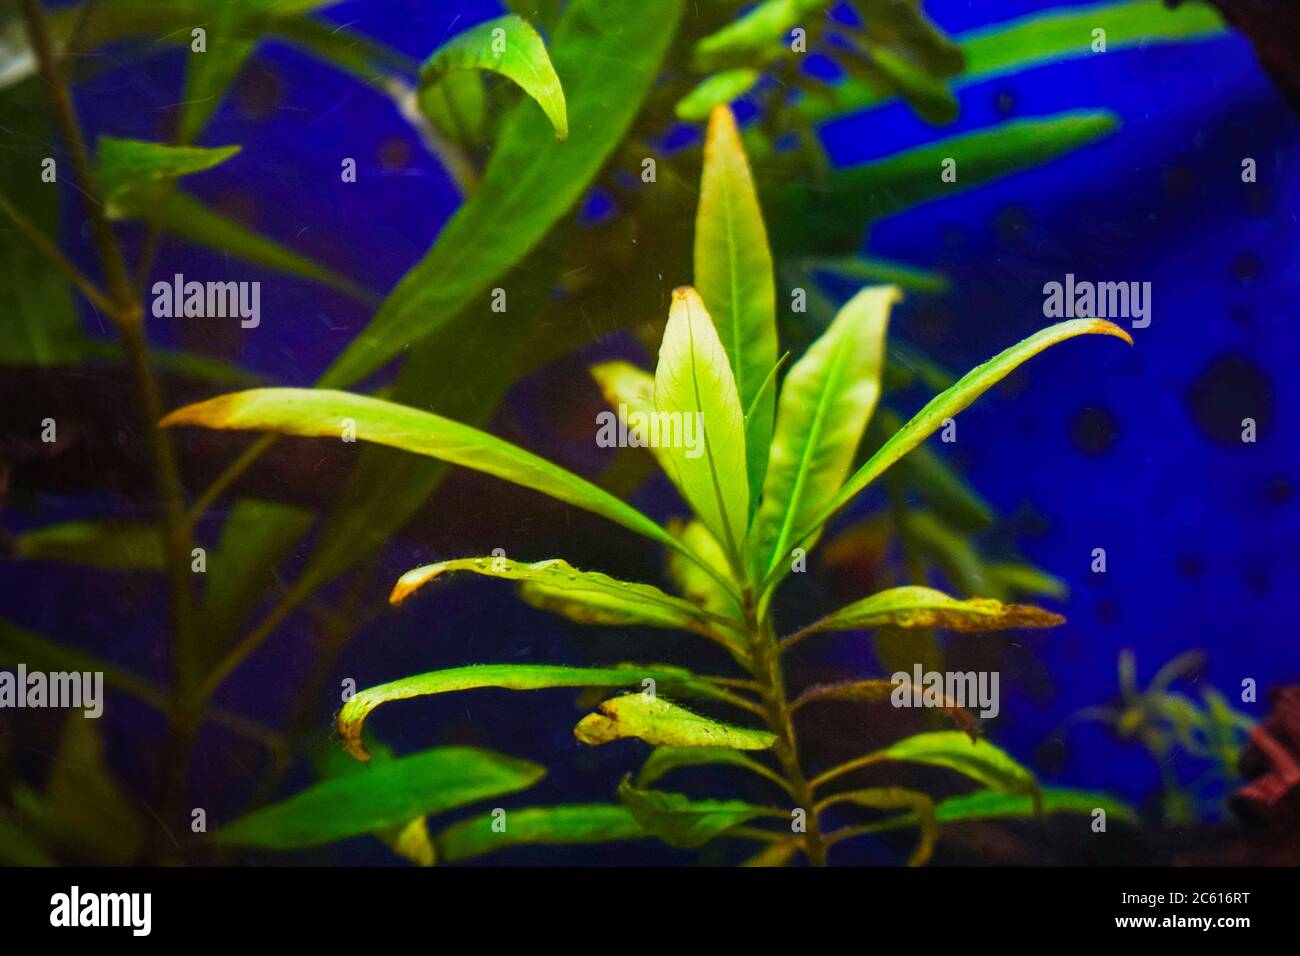 Water plant hygrophila in the aquarium. Hygrophila angustifolia. Soft focus Stock Photo